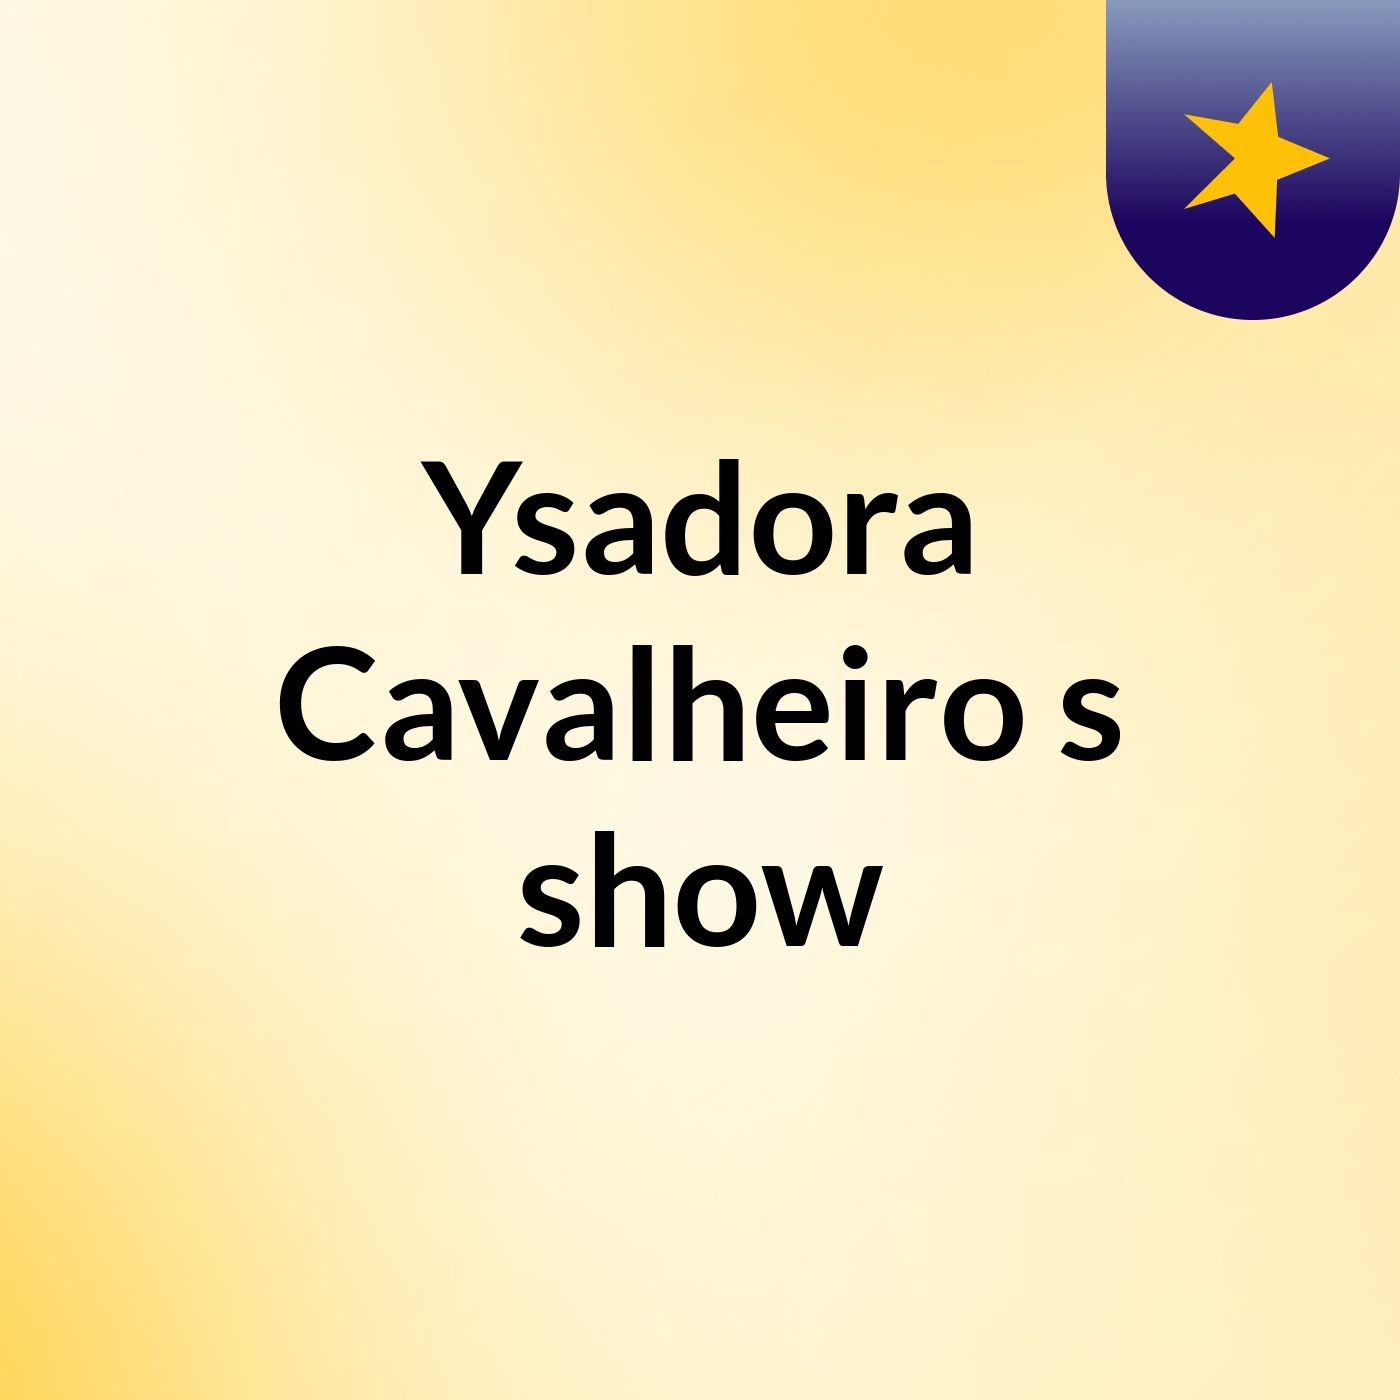 Ysadora Cavalheiro's show